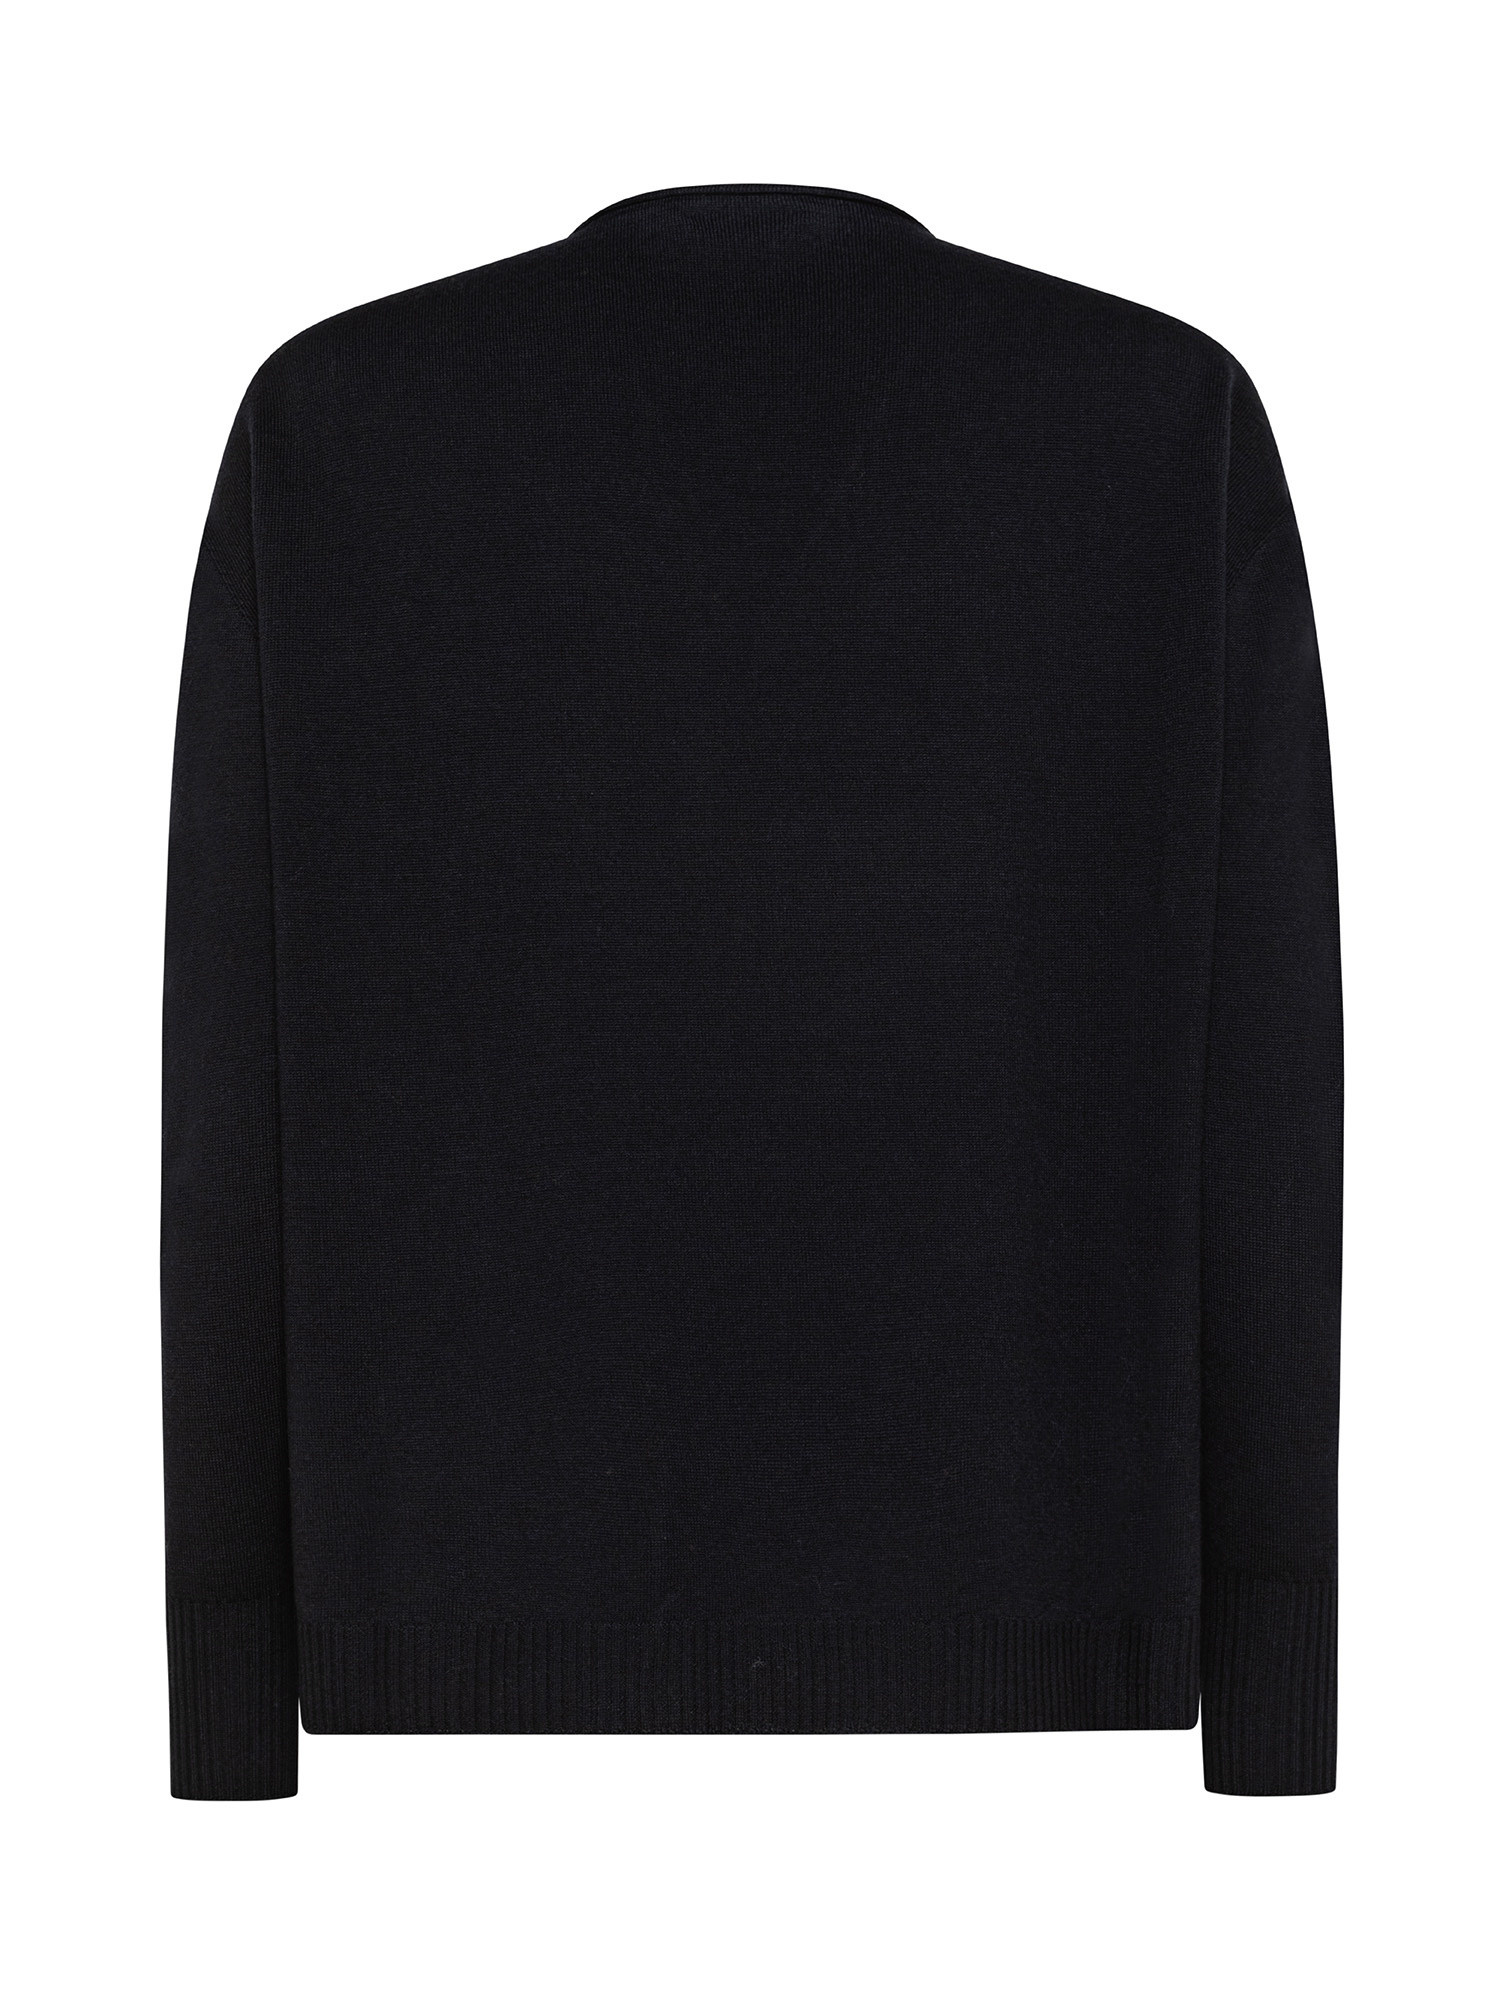 K Collection - V-neck sweater, Black, large image number 1